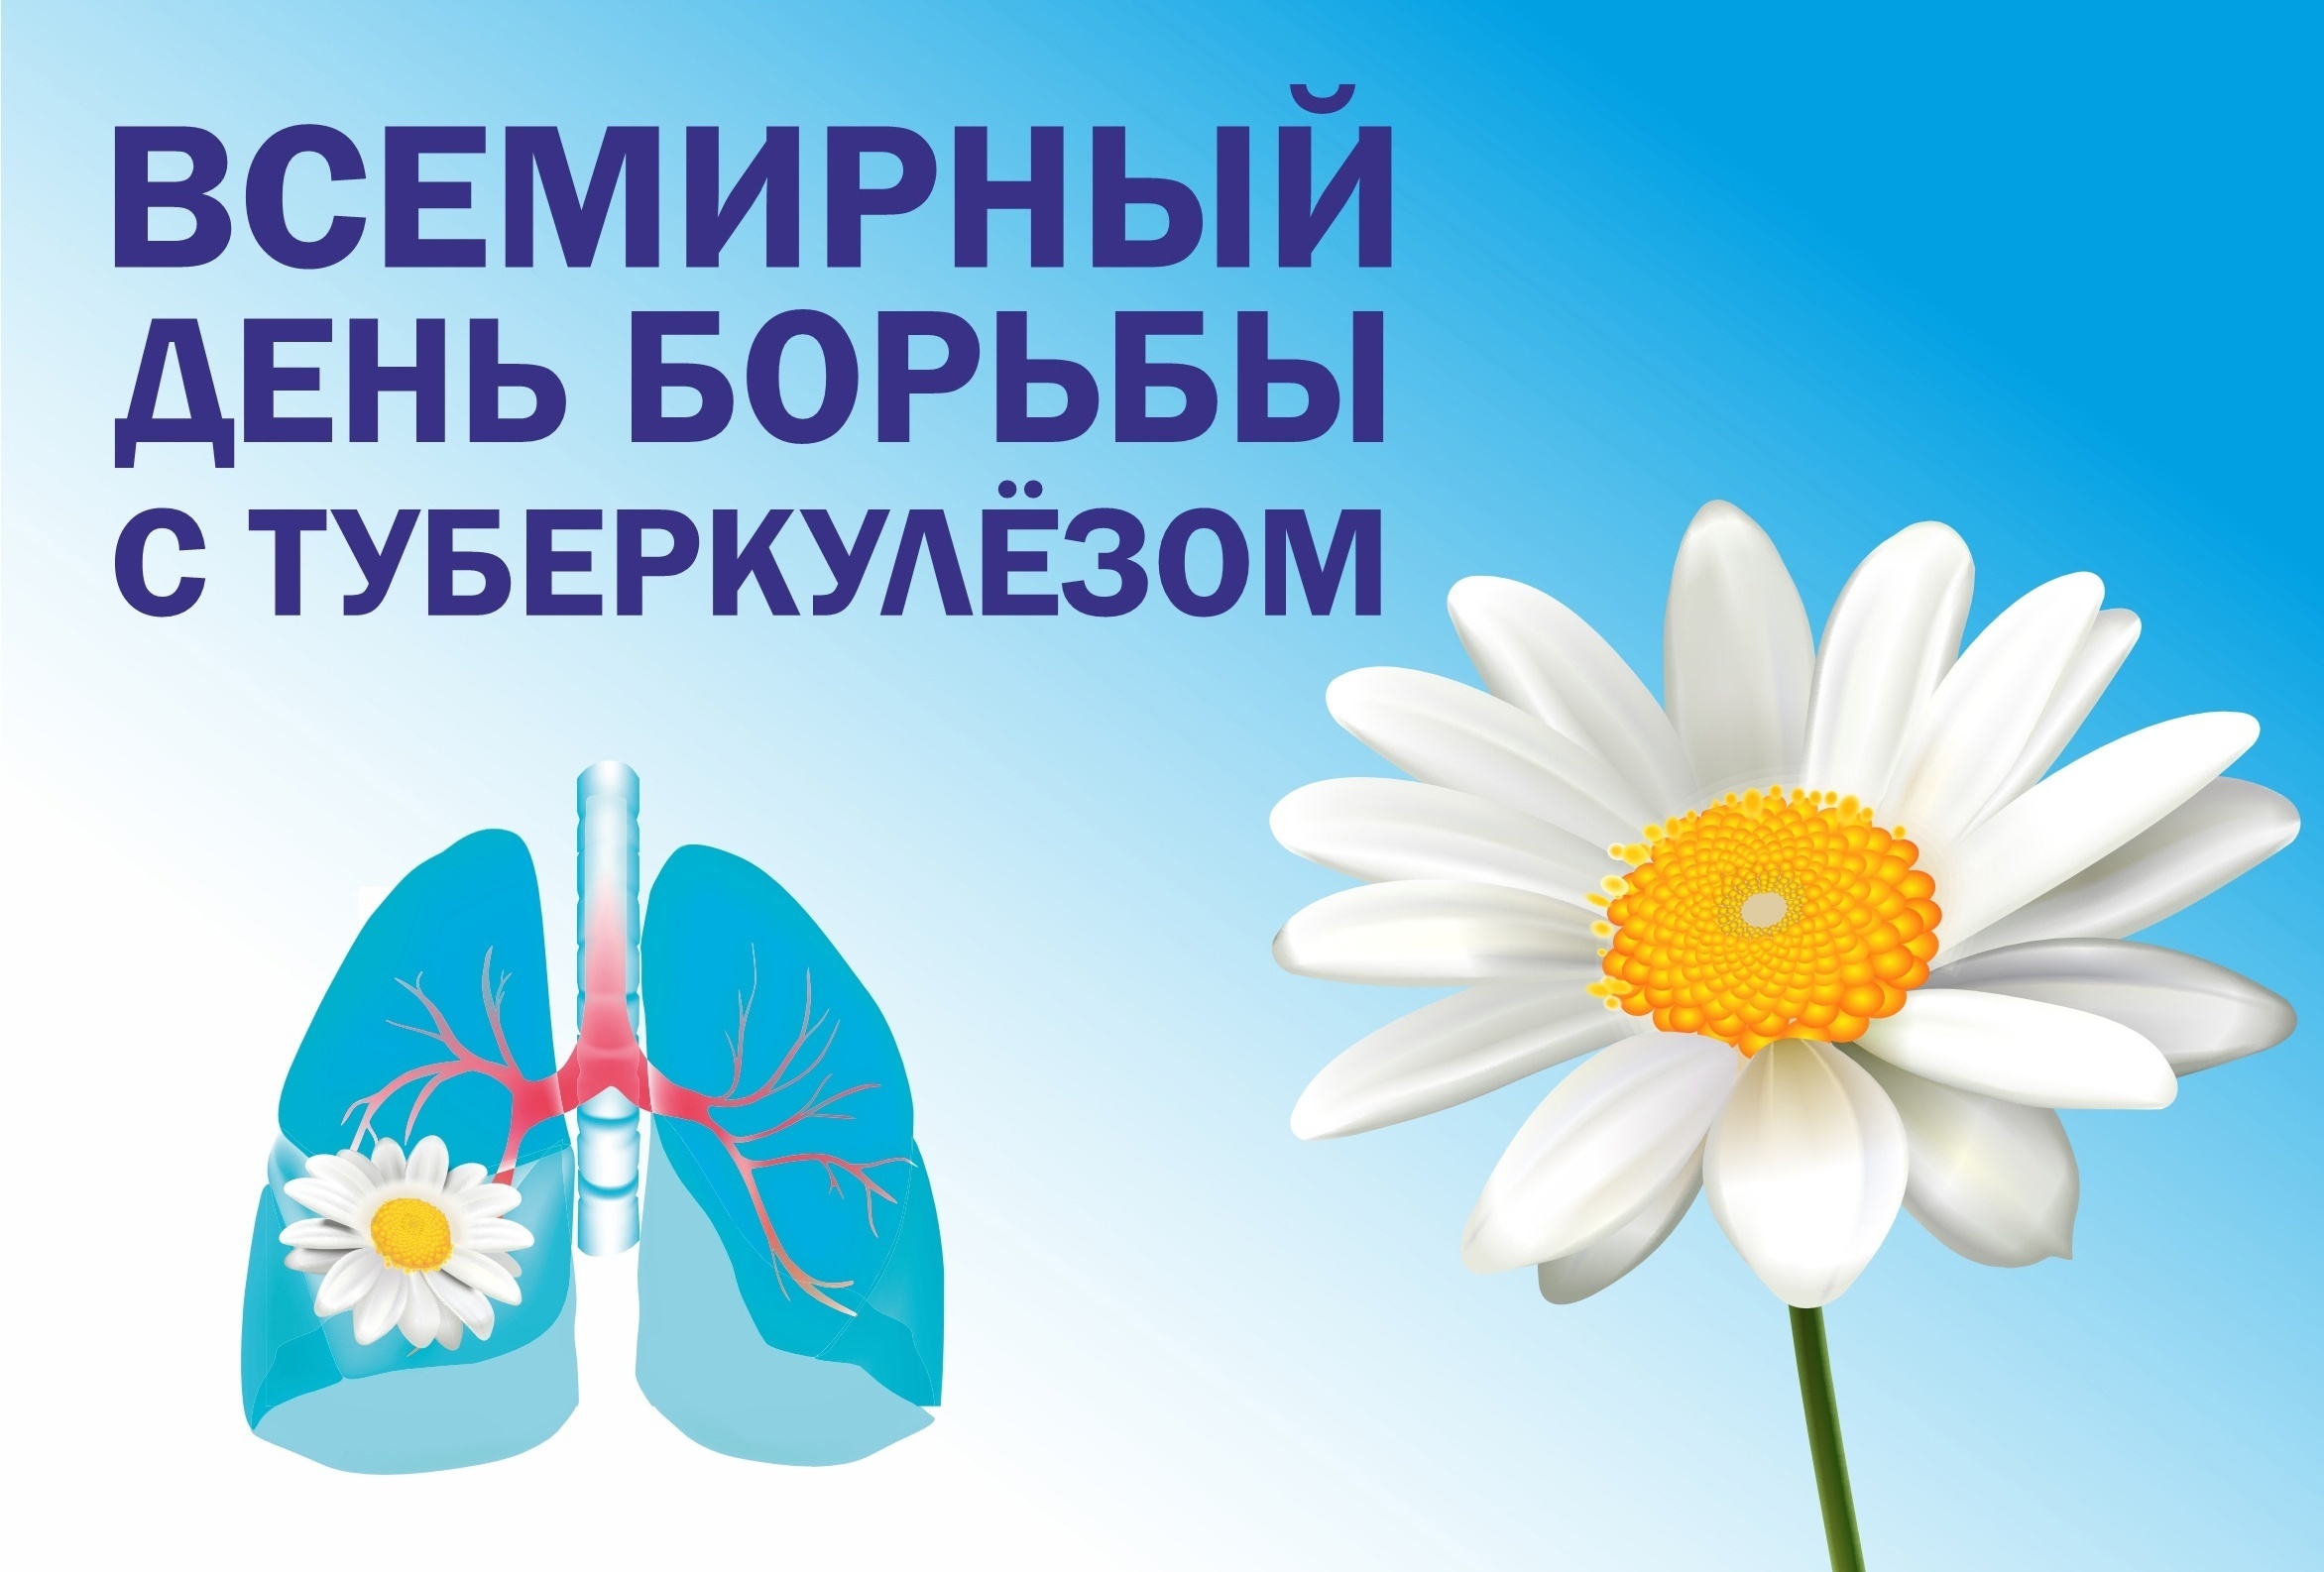 С 25 по 29 марта будет работать горячая линия по вопросам профилактики туберкулеза.